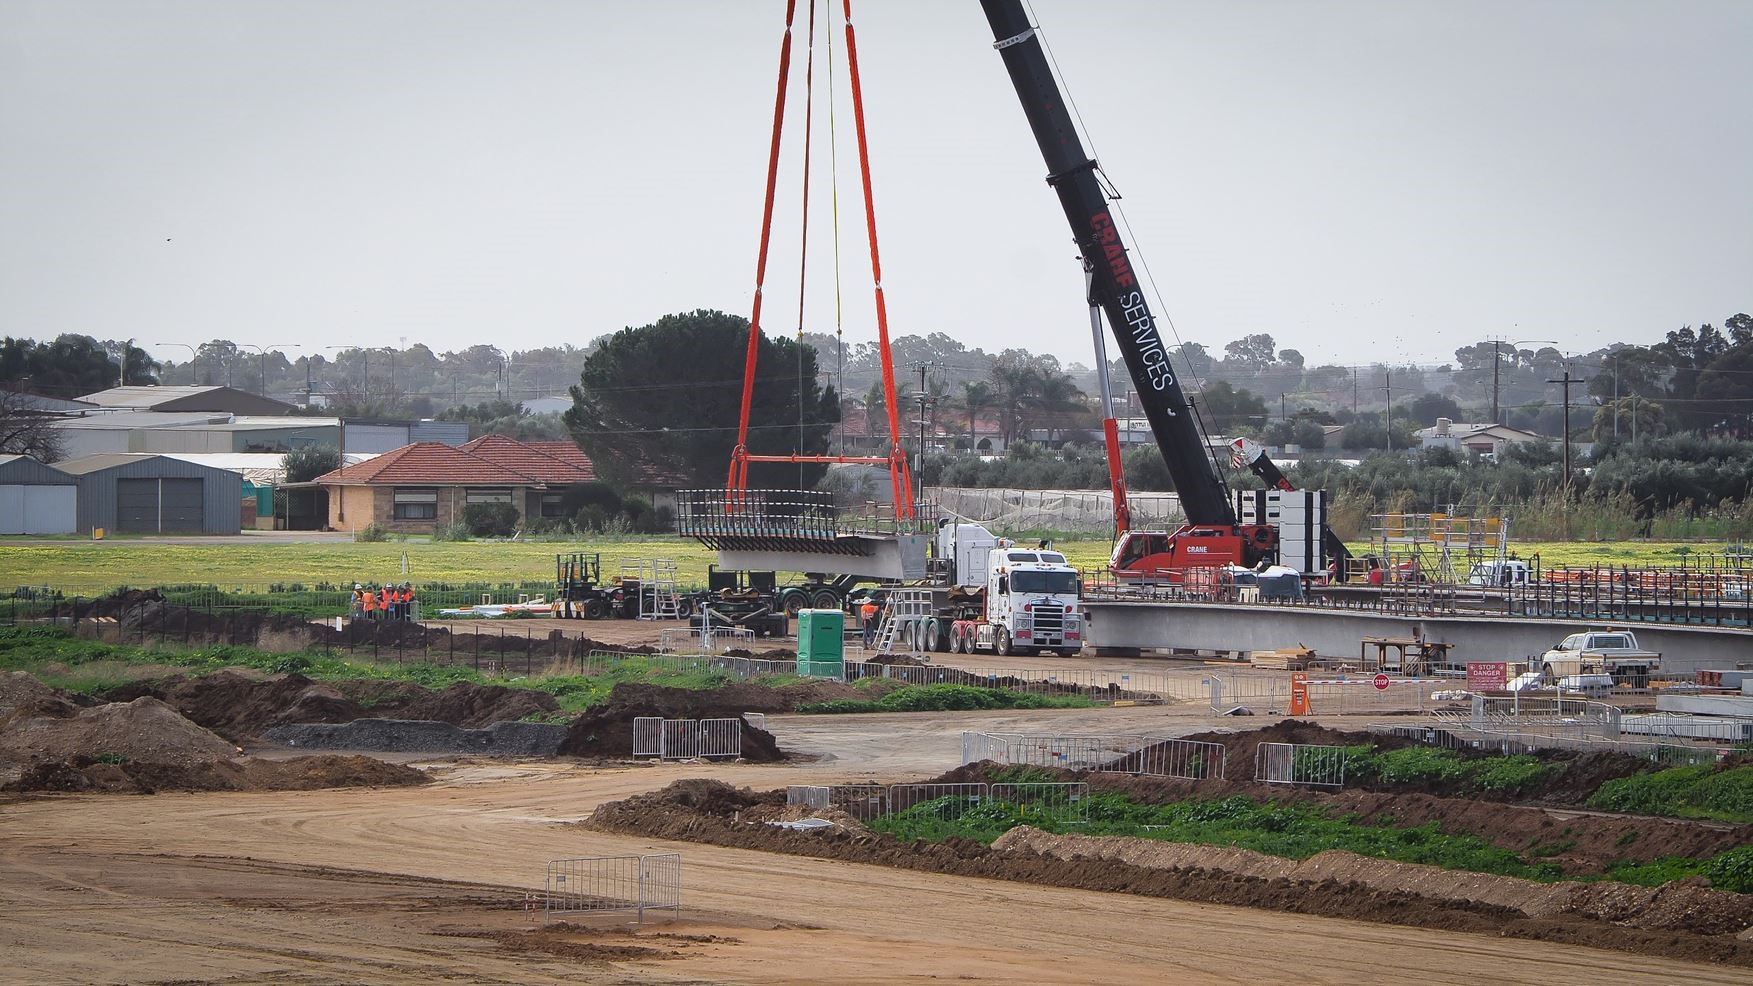 Super T Beams being craned in to build the Waterloo Corner bridge - October 2018